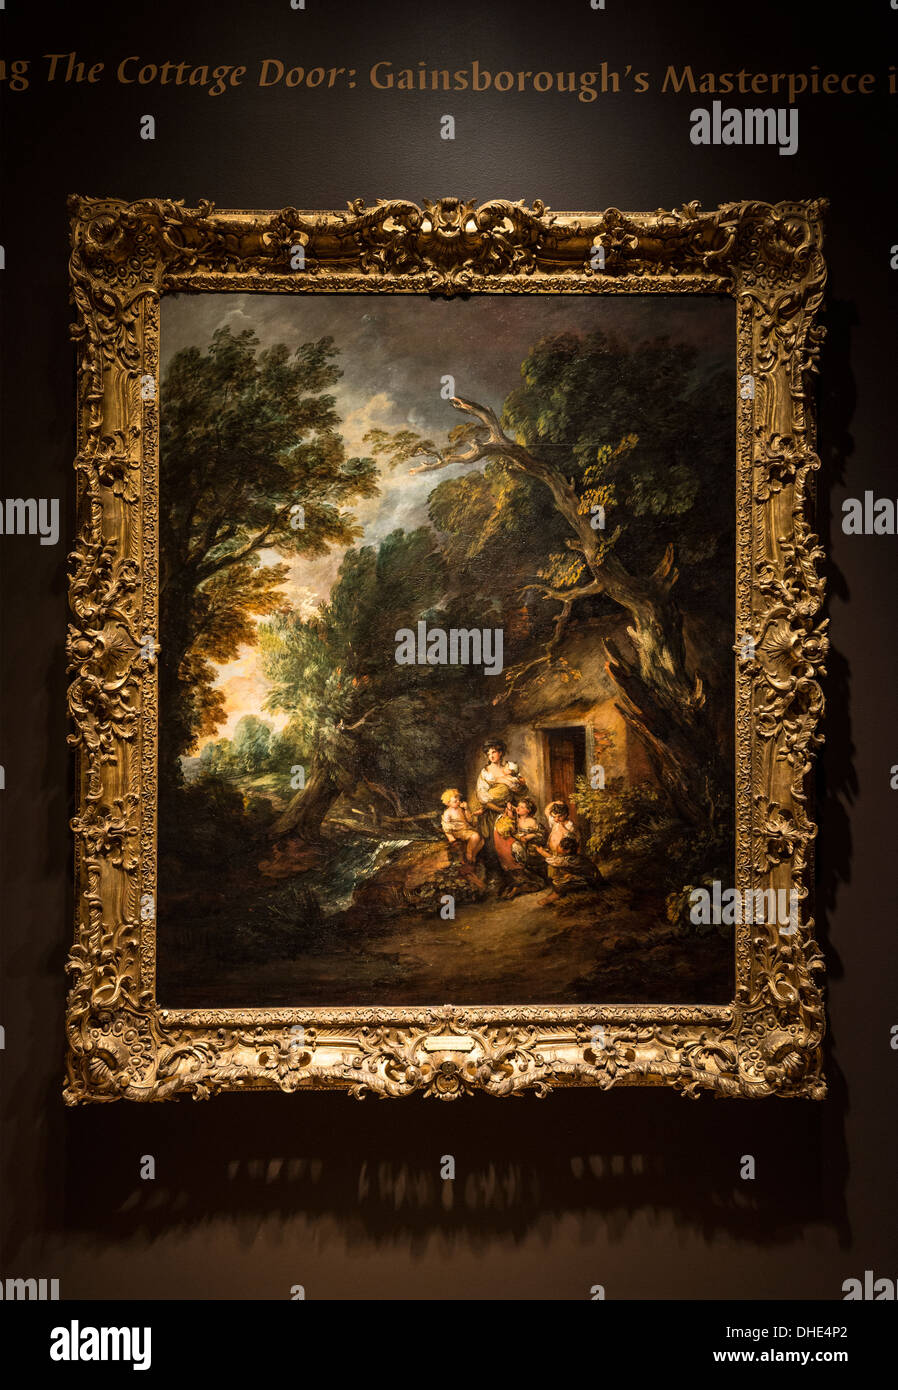 La porte du chalet, de Thomas Gainsborough est parmi ses toiles les plus célèbres. Banque D'Images